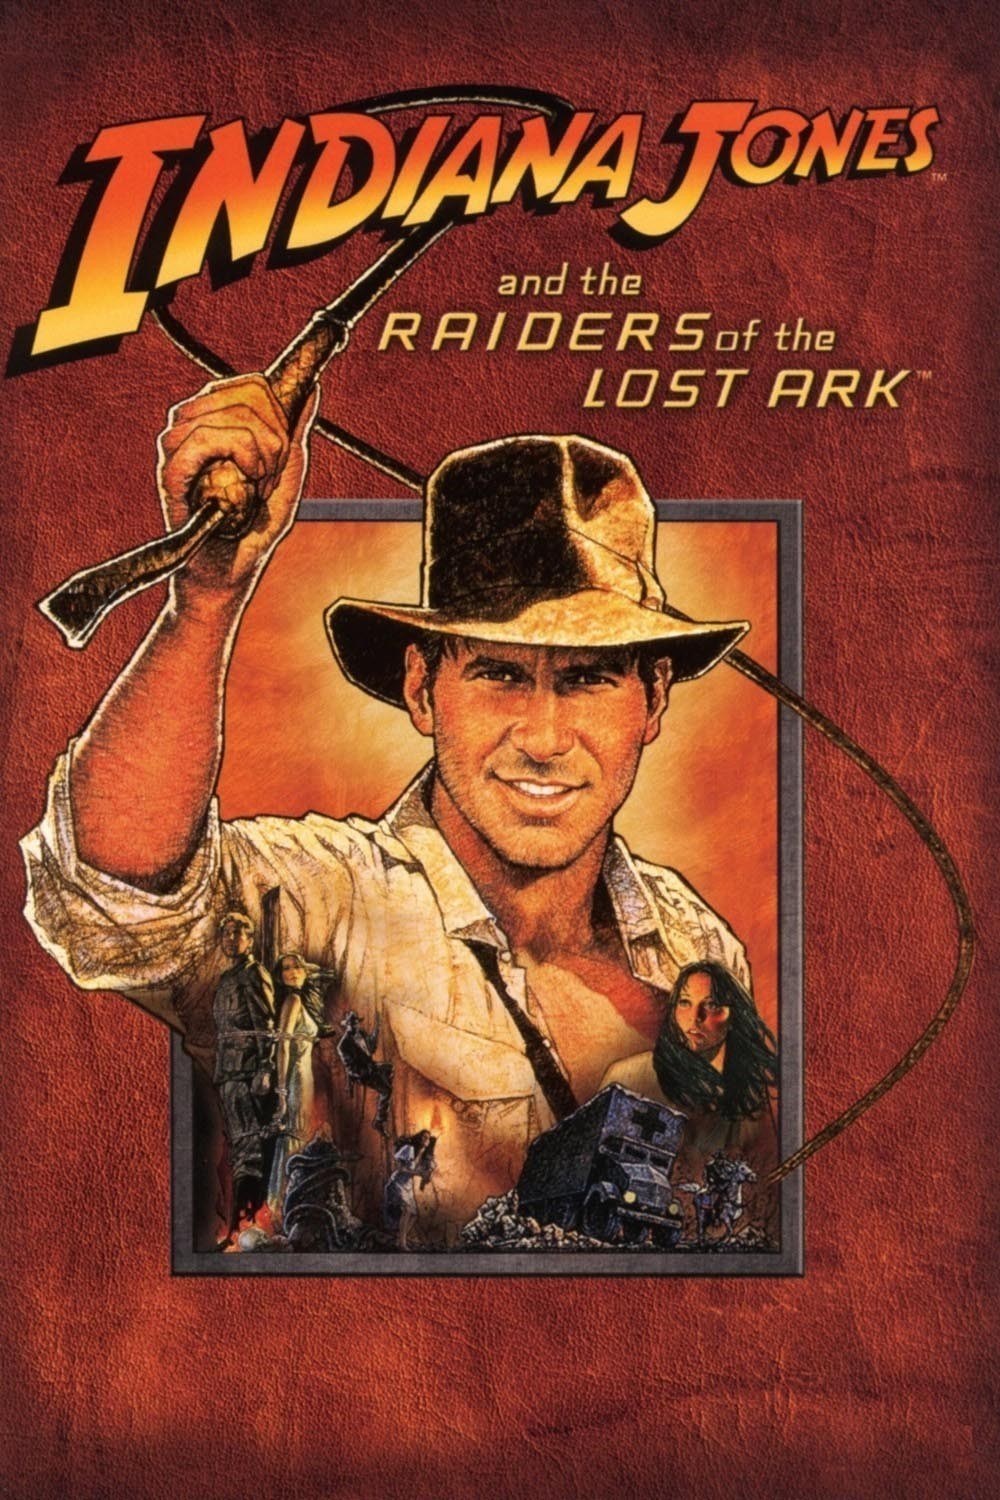 Raiders Of The Lost Ark HD wallpapers, Desktop wallpaper - most viewed